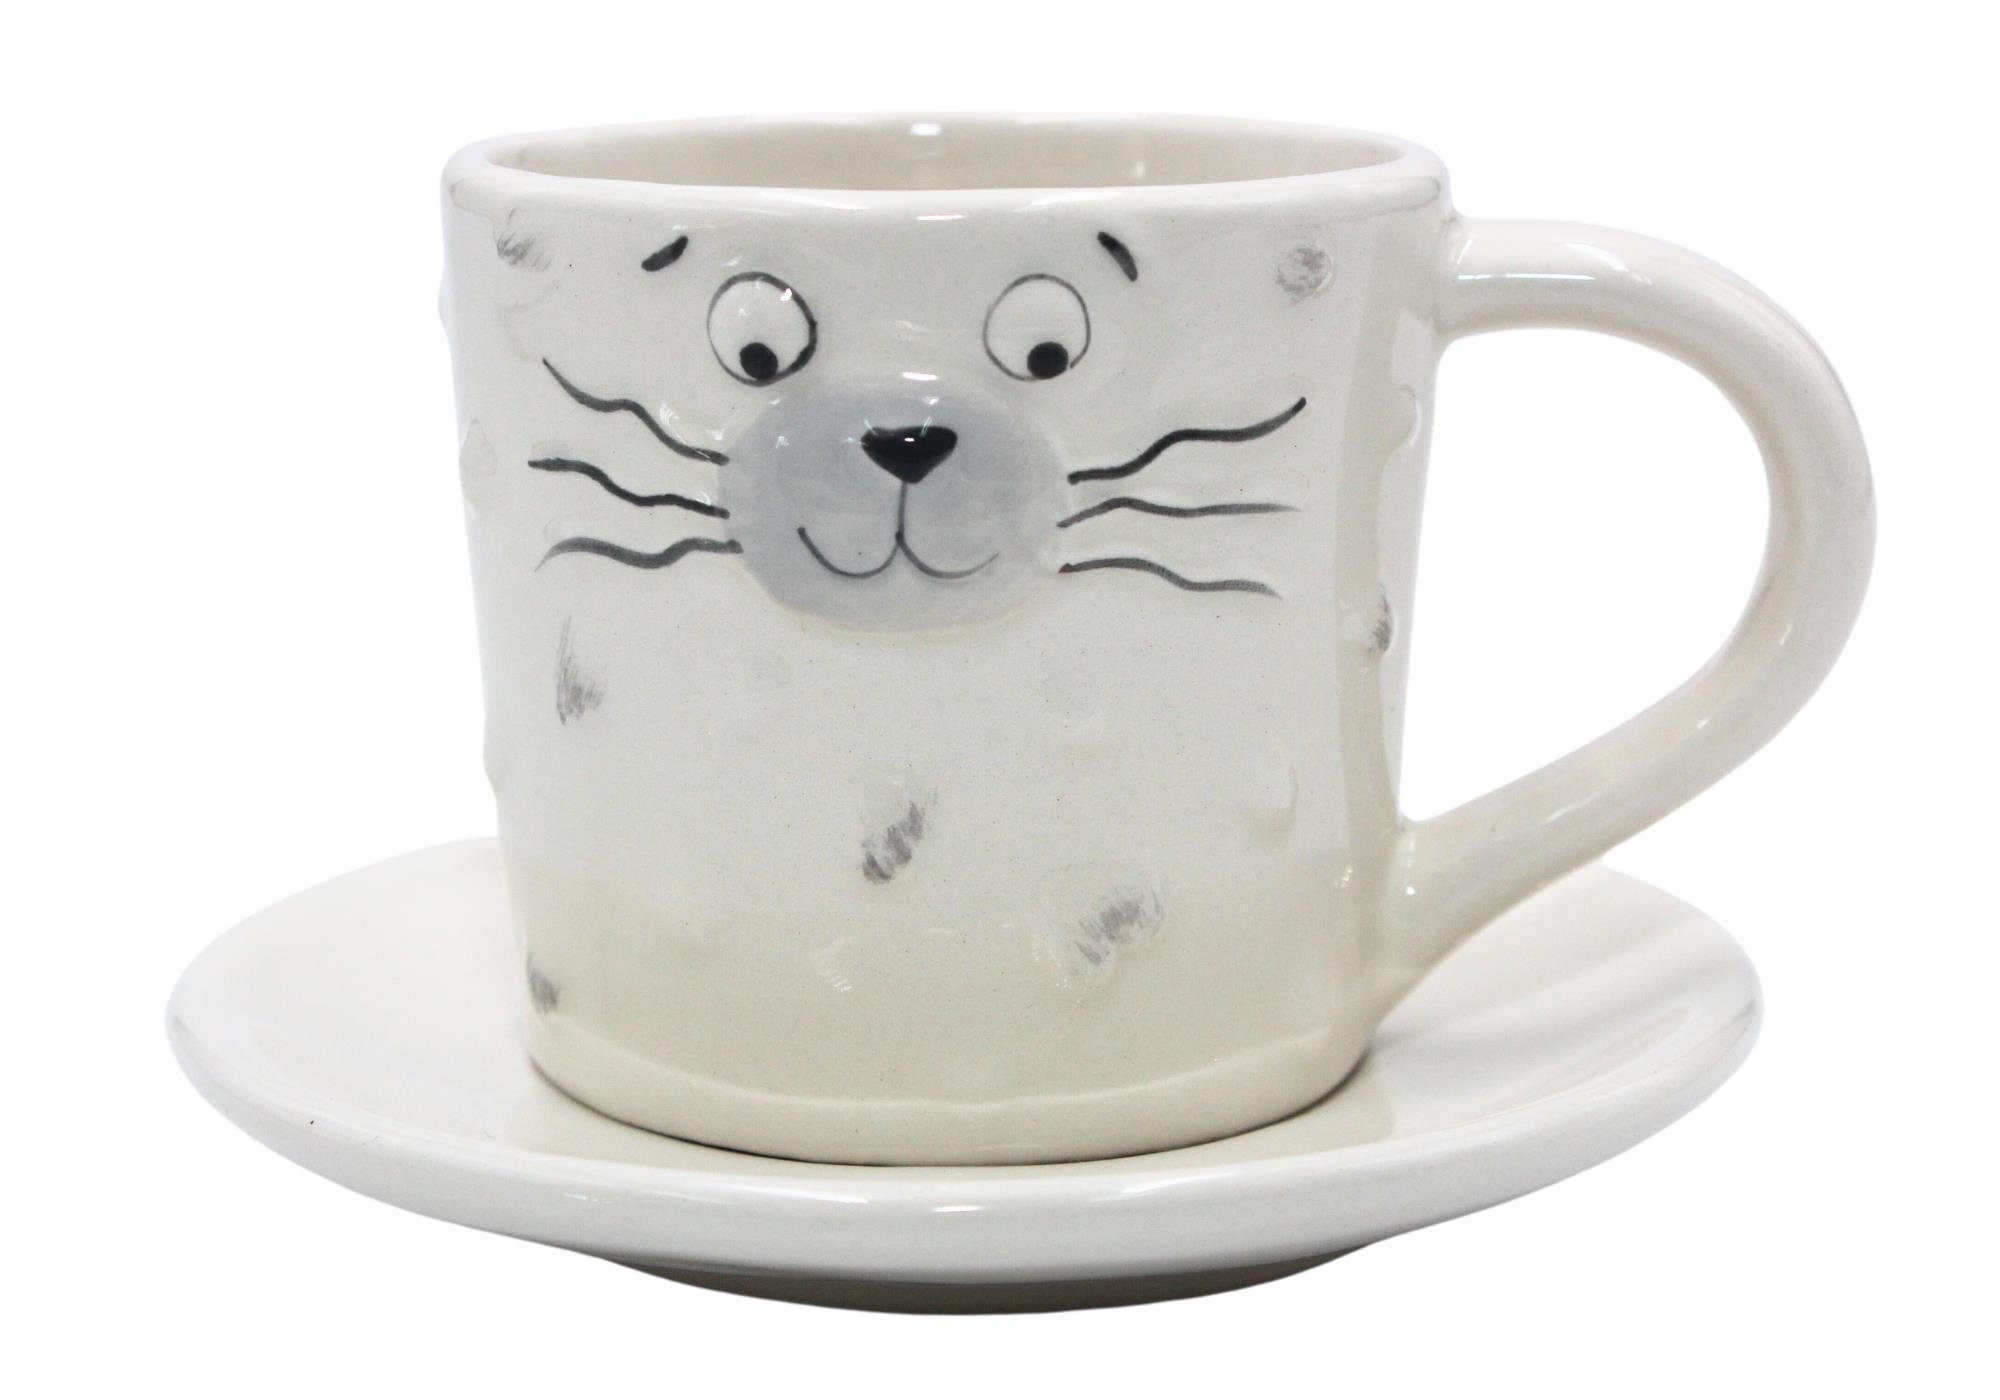 Dekohelden24 Tasse Porzellan Kaffeebecher, Tasse mit Untertasse/Teller mit Katzengesicht, Porzellan